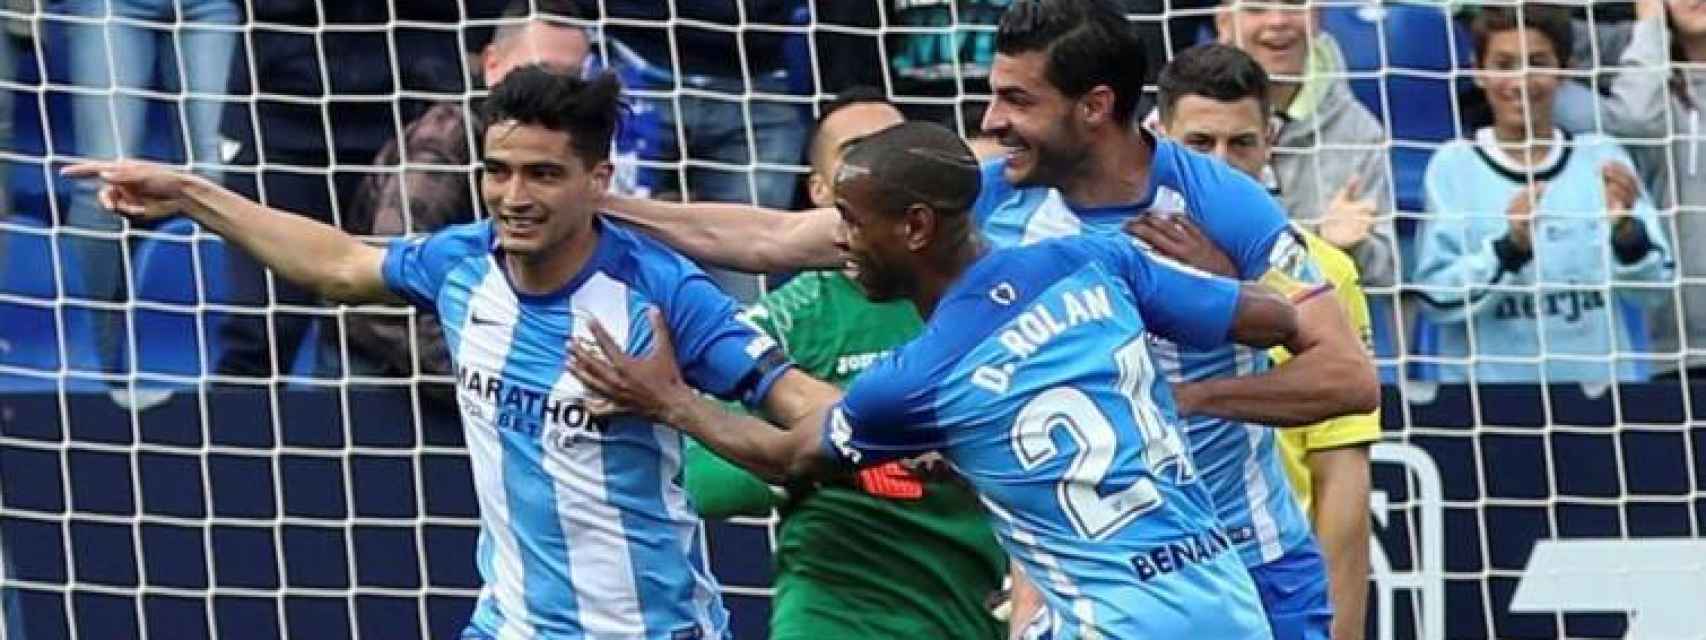 Los jugadores del Málaga celebran un gol.